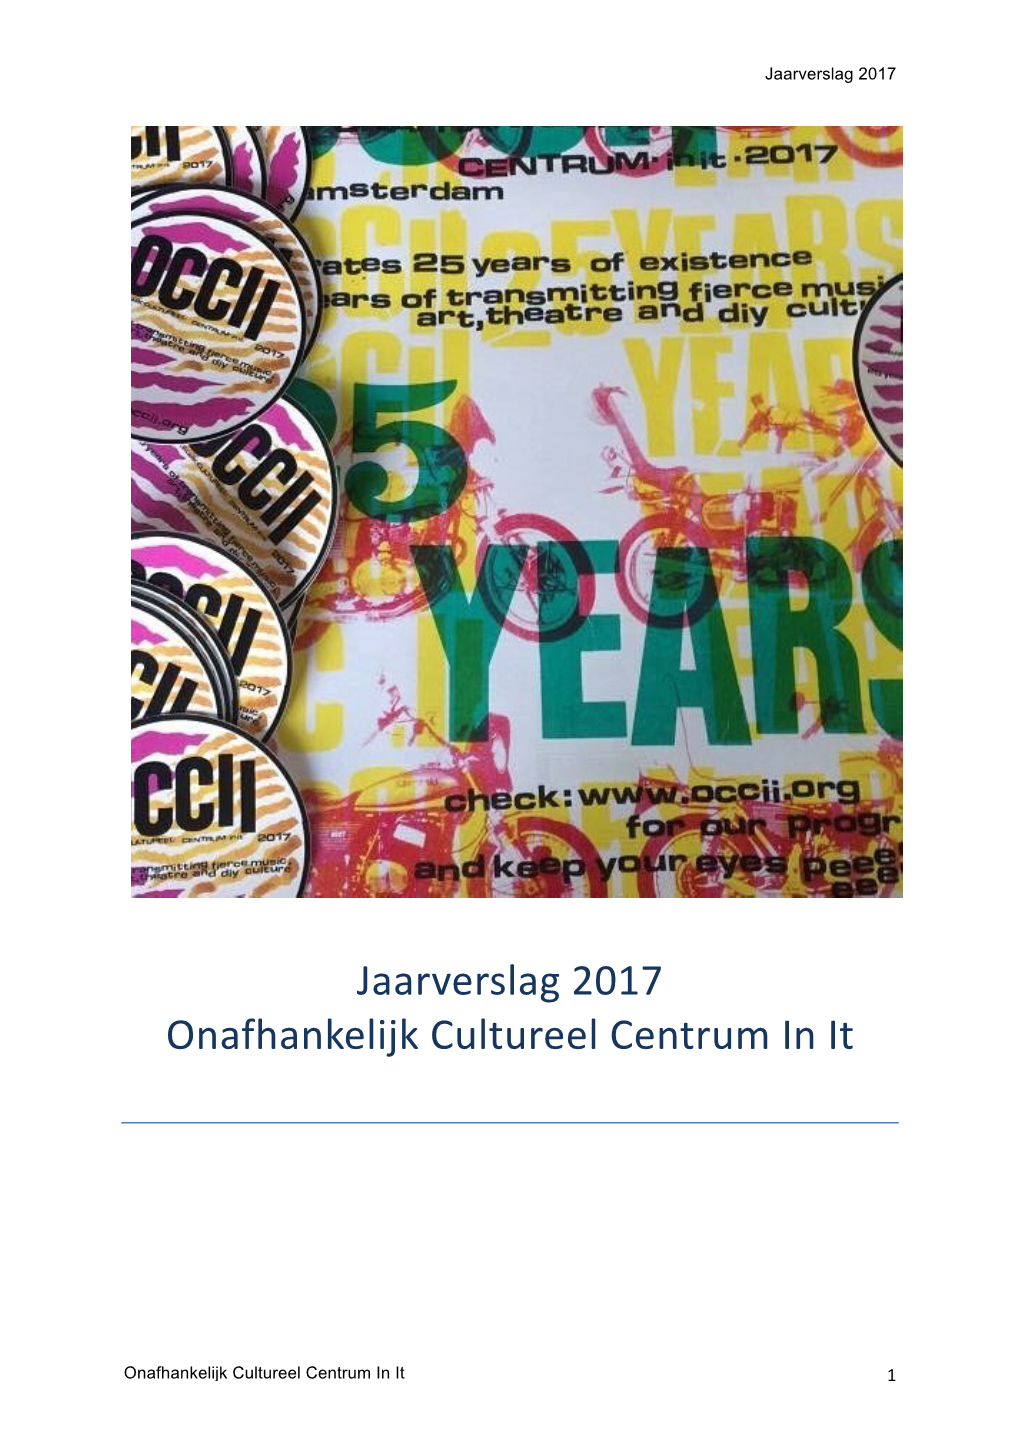 Jaarverslag 2017 Onafhankelijk Cultureel Centrum in It